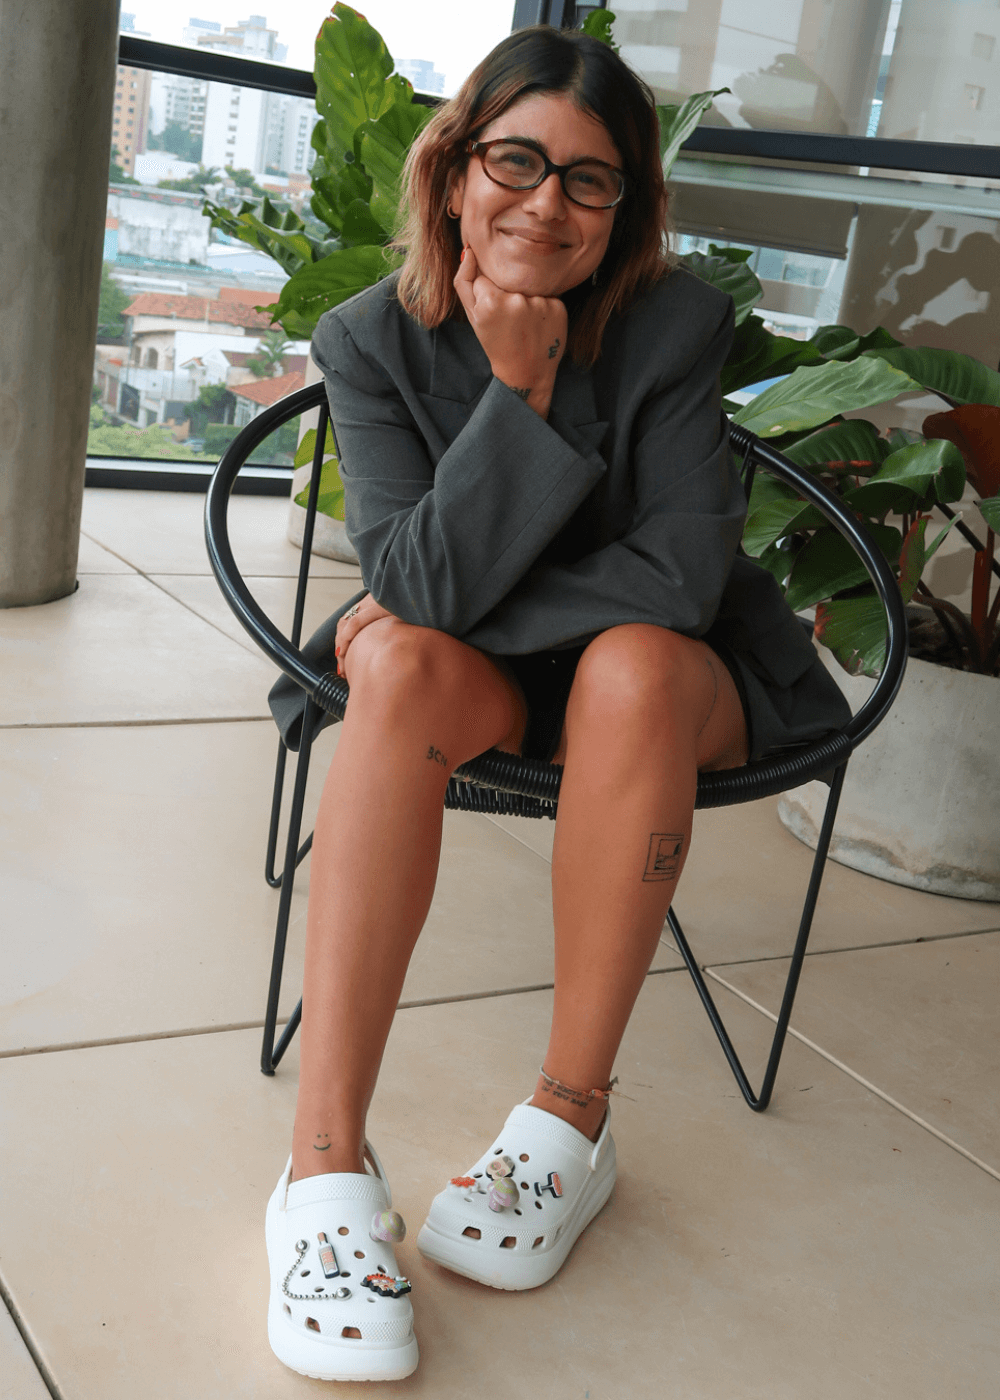 Thais Saviani Bastos - bermuda, camisa e crocs branco - sapato personalizado - outono - mulher de óculos sentada em uma cadeira sorrindo - https://stealthelook.com.br